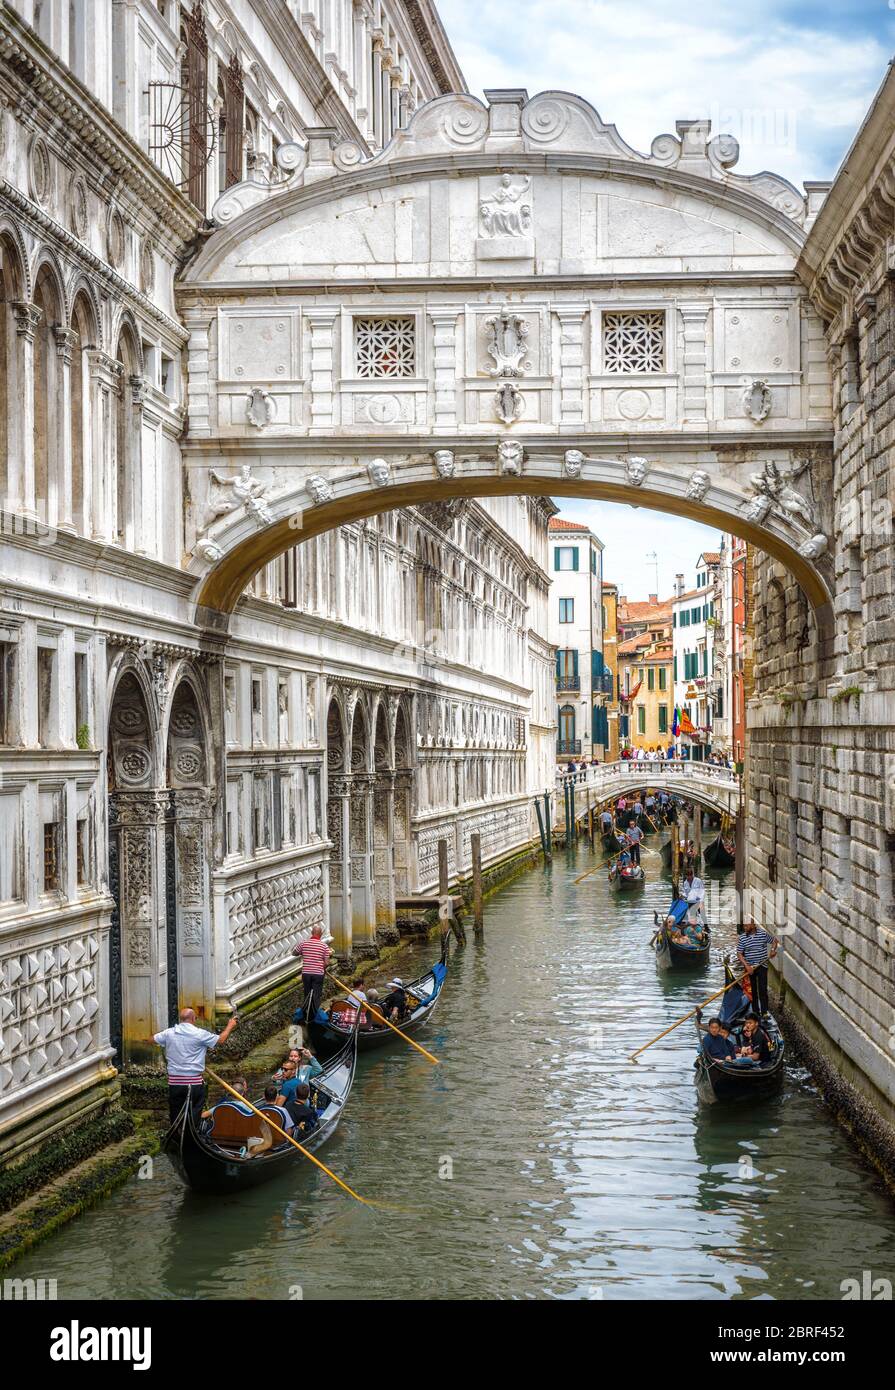 Venezia, Italia - 21 maggio 2017: Gondole con turisti navigano sotto il famoso Ponte dei Sospiri di Venezia. E' un famoso punto di riferimento di Venezia. Wate romantico Foto Stock